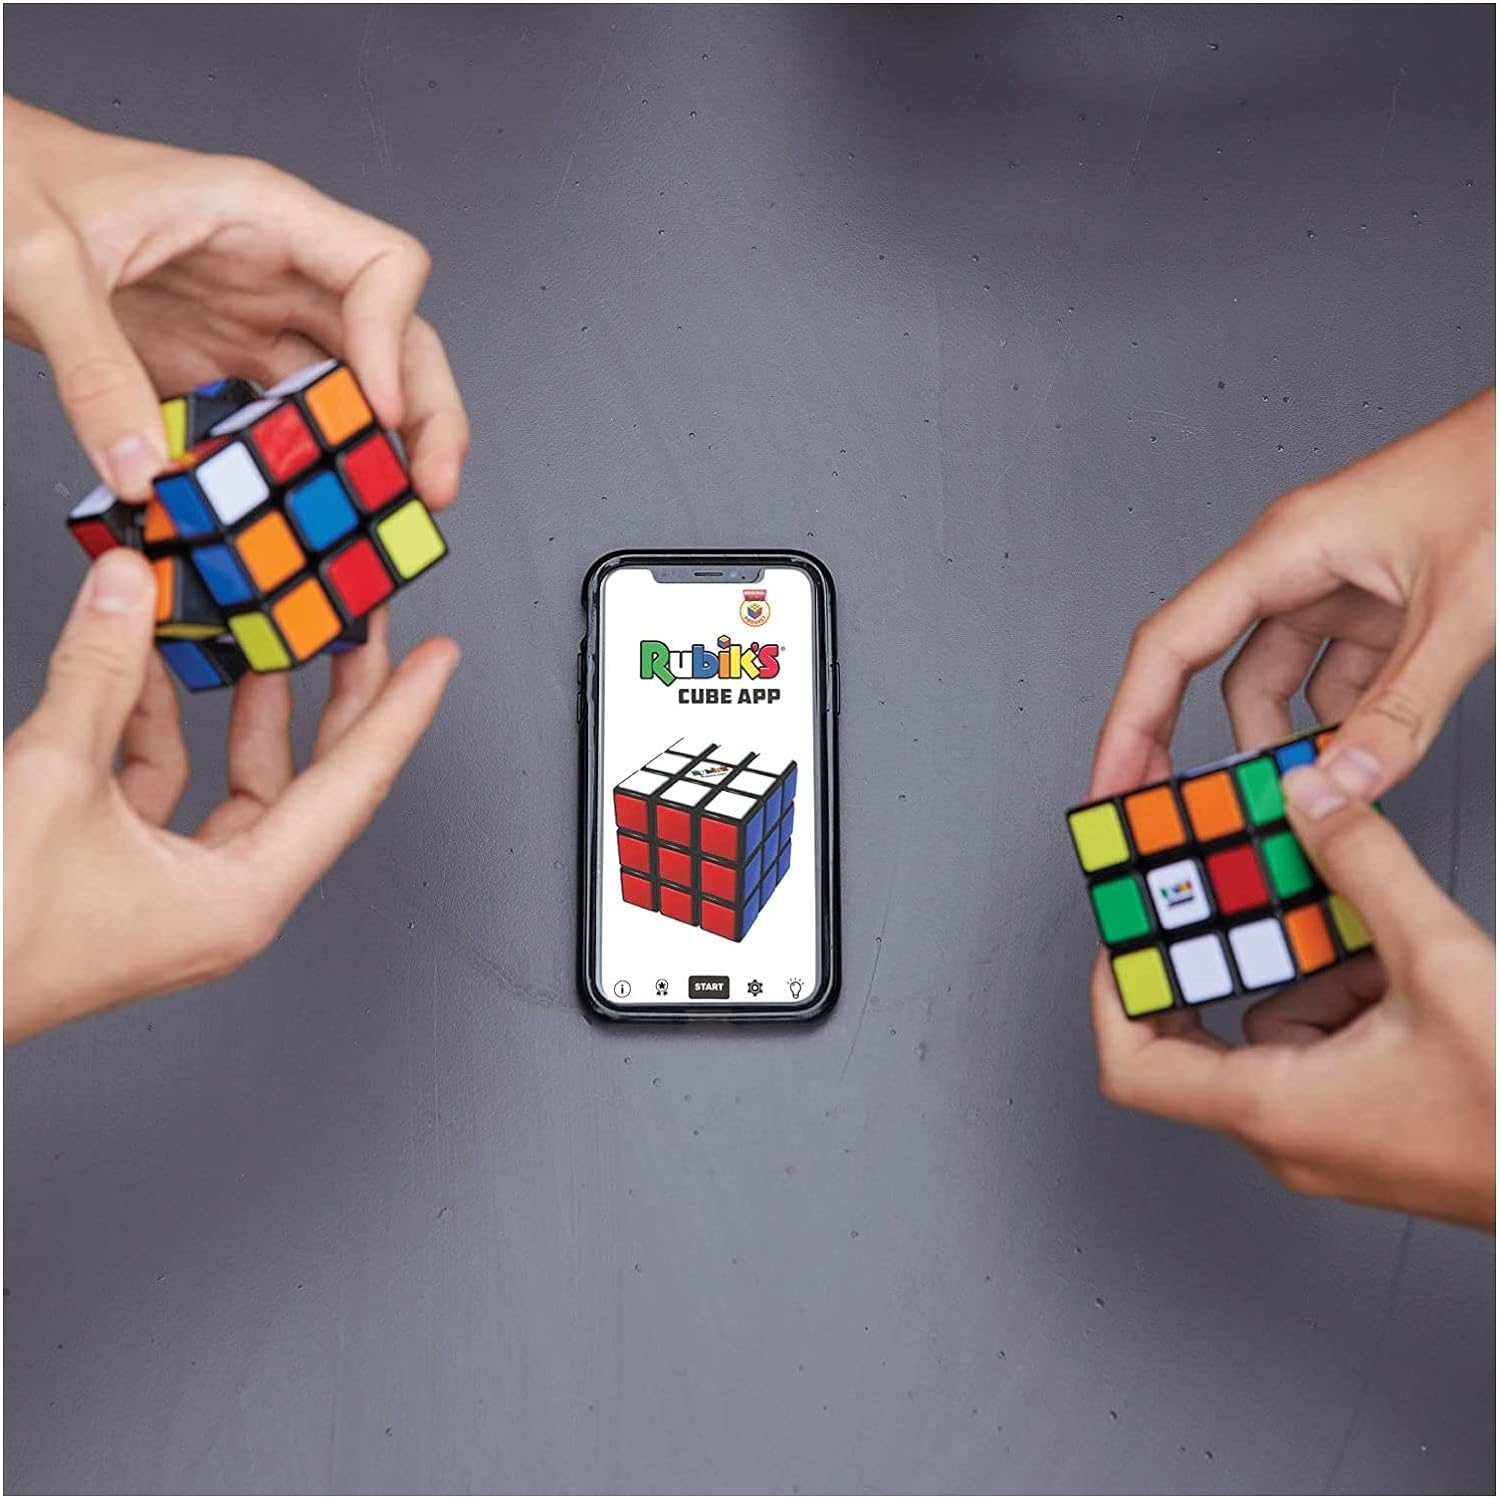 RUBIK'S, SPIN MASTER, Il Cubo di Rubik's Speed 3x3 Magnetico, l'Originale  Cubo per Problem-Solving più Veloce che Mai, per Speed Cuber, Rompicapo  Adatto a Bambini e Adulti, 8+ Anni : .it: Giochi